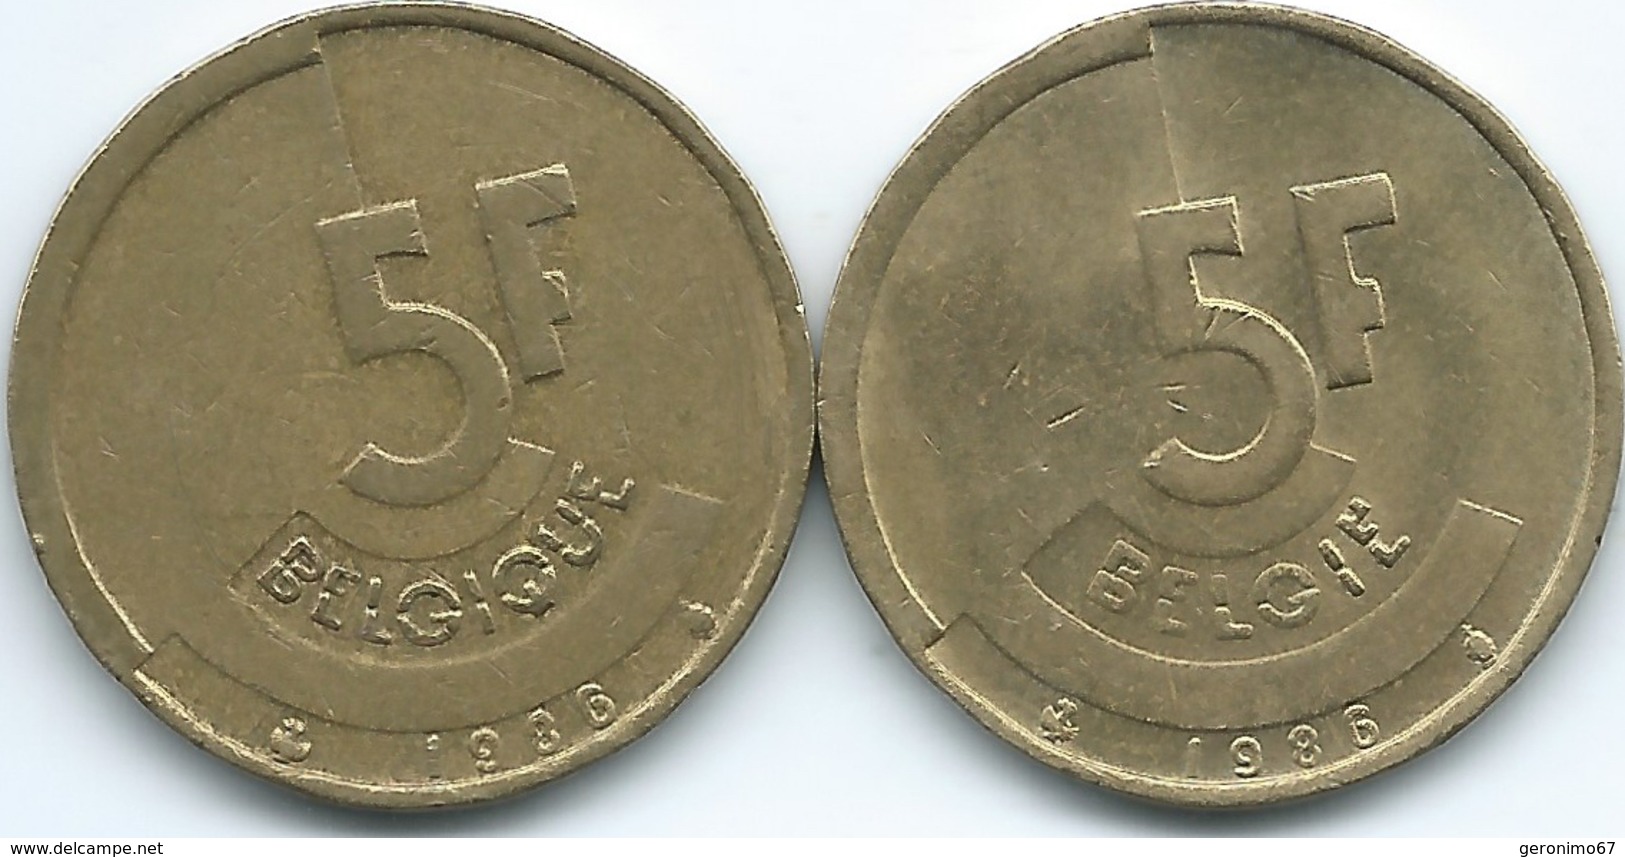 Belgium - Baudouin - 5 Francs - 1986 - French (KM163) & Dutch (KM164) - 5 Francs